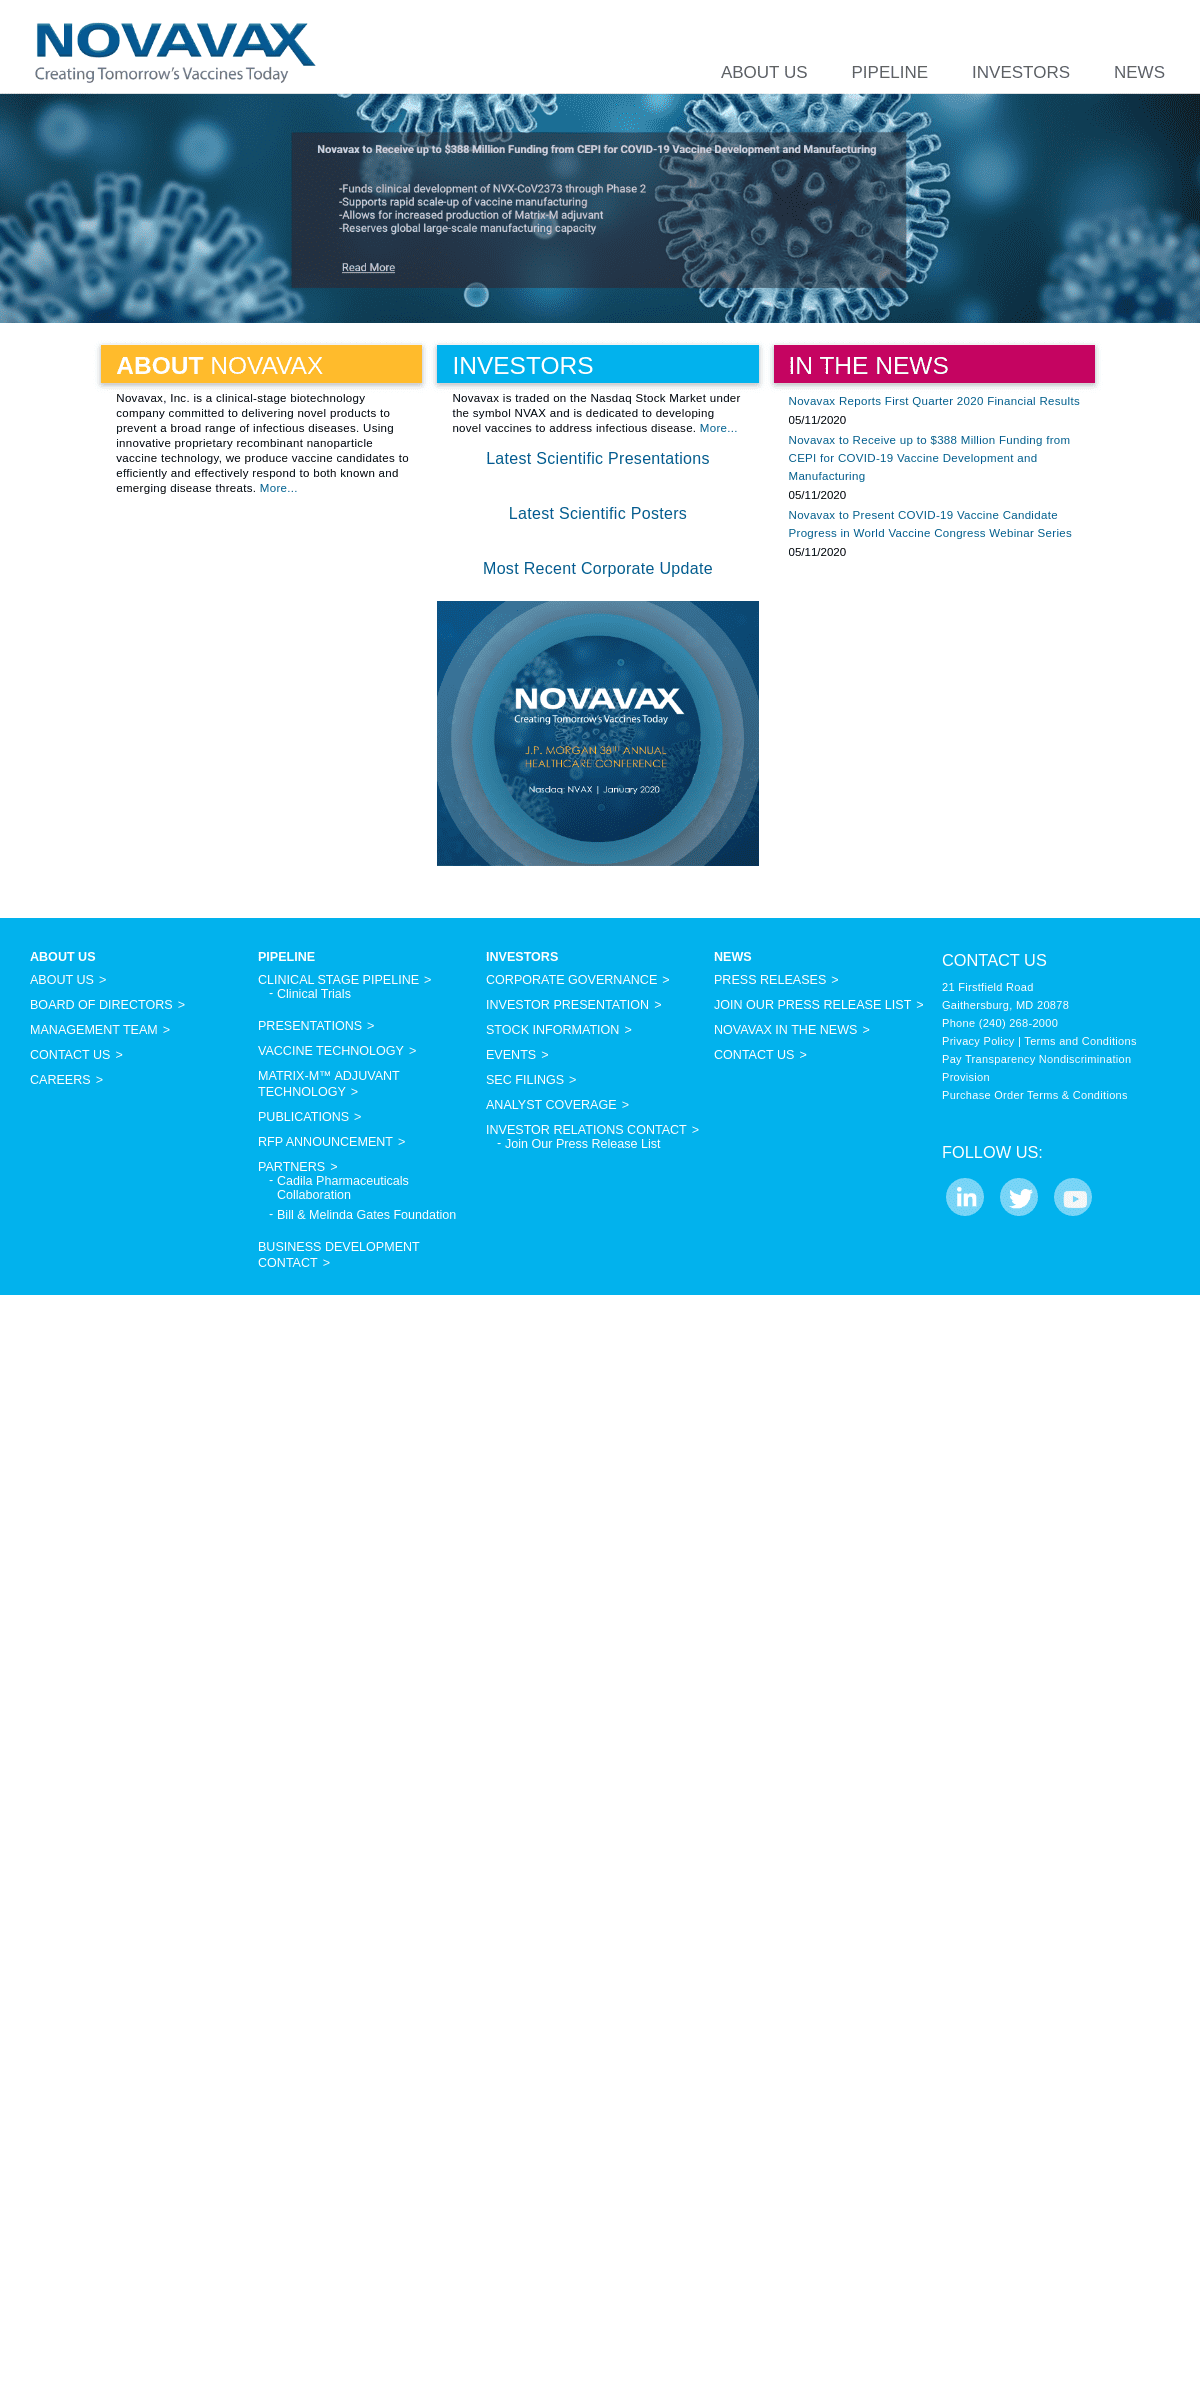 A complete backup of novavax.com